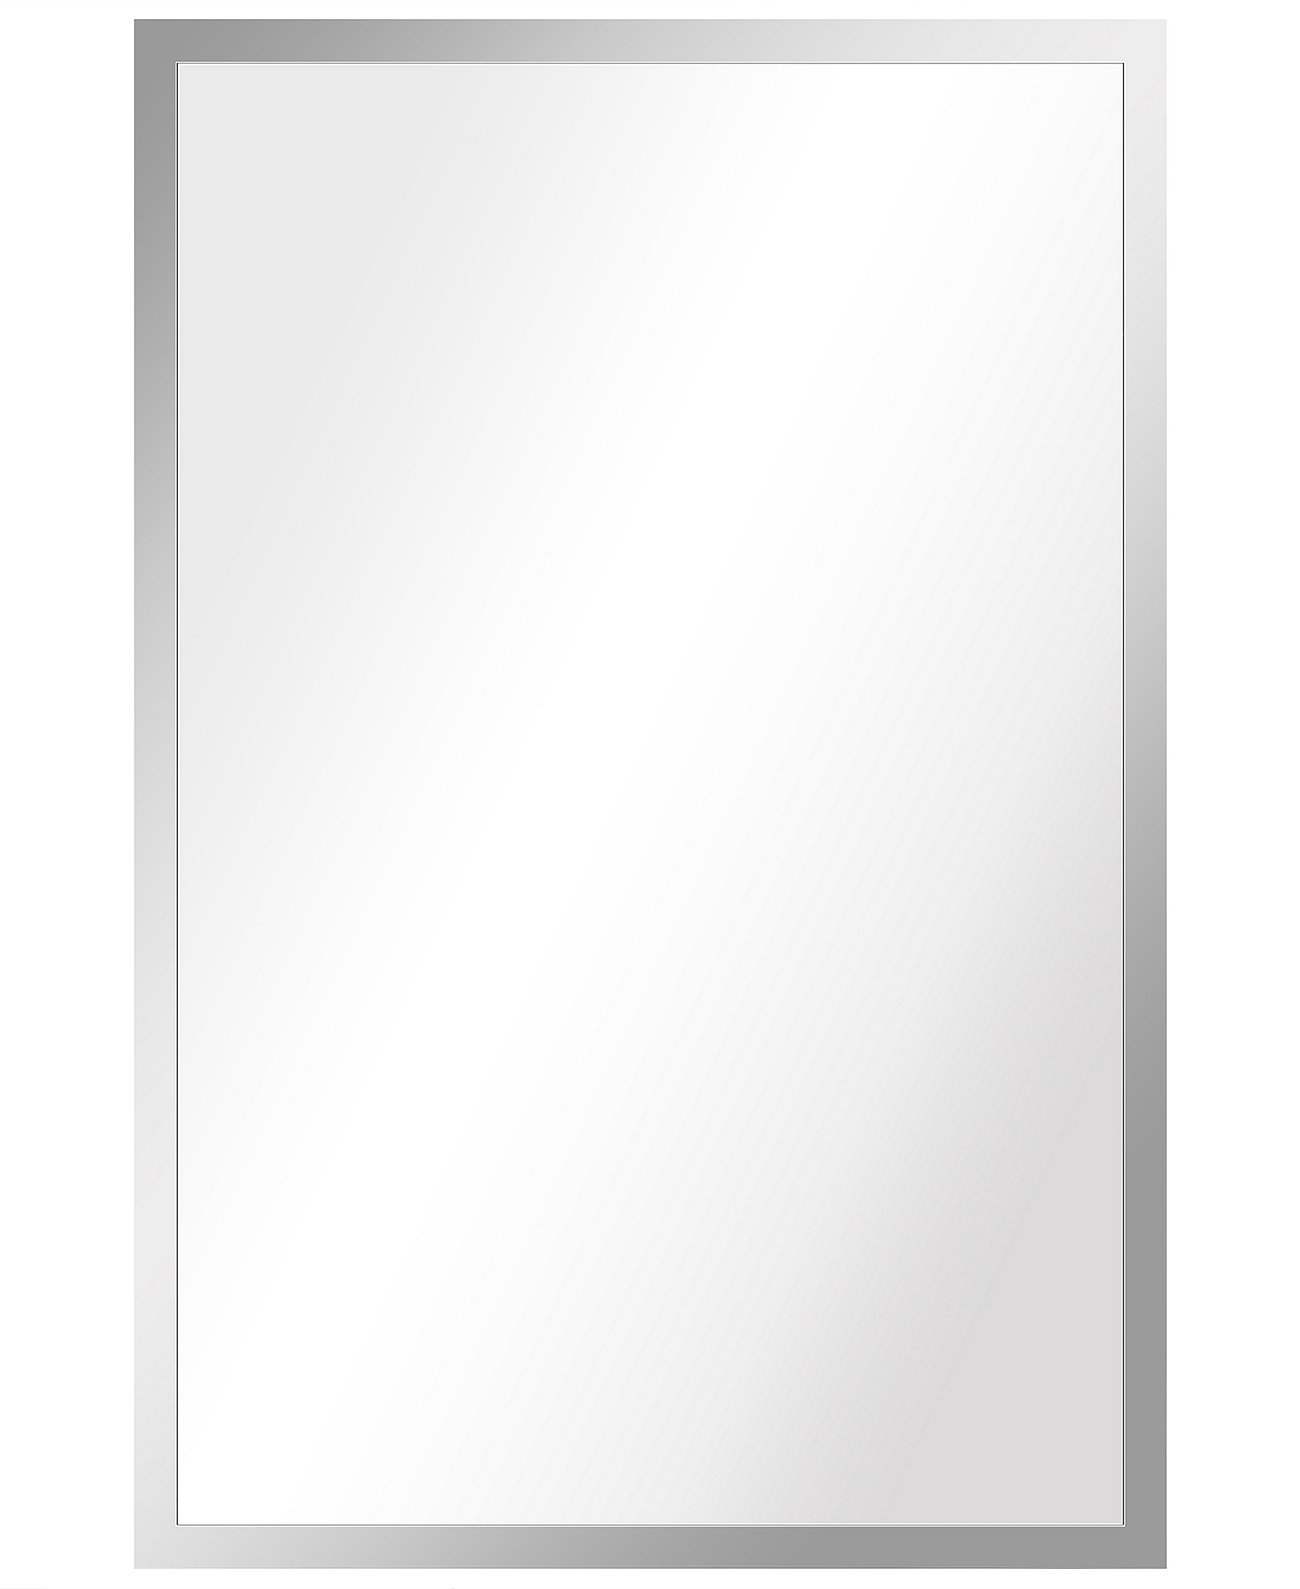 Прямоугольное настенное зеркало Contempo из полированной нержавеющей стали, 24 x 36 дюймов Empire Art Direct